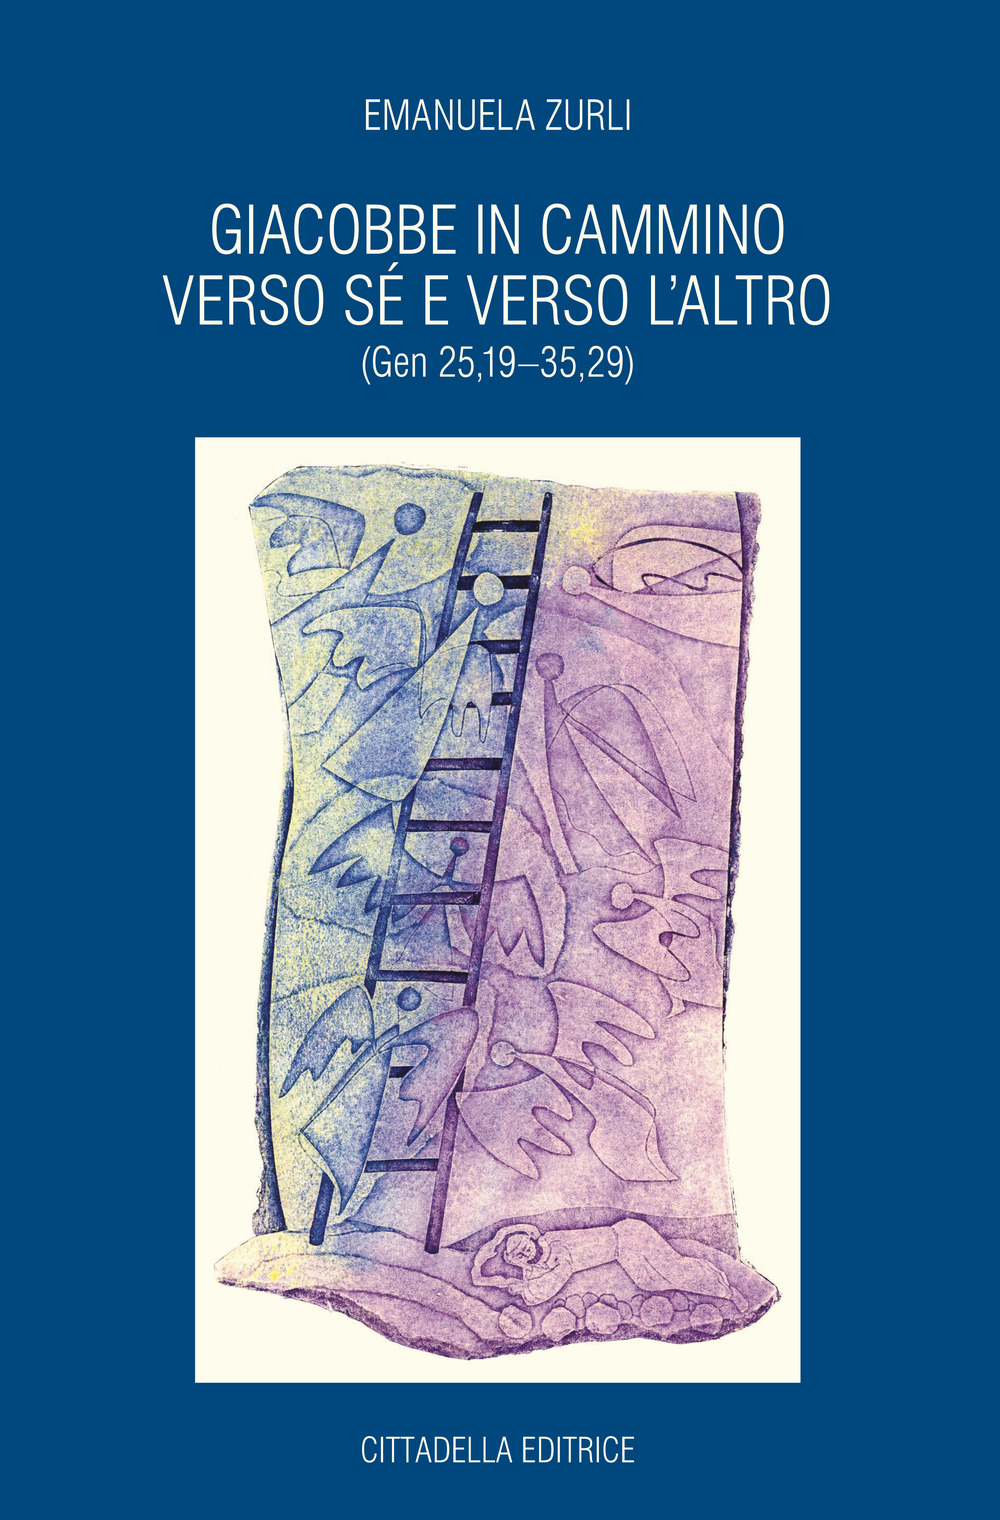 Libri Emanuela Zurli - Giacobbe In Cammino Verso Se E Verso L'Altro (Gen 25,19-35,29) NUOVO SIGILLATO, EDIZIONE DEL 19/10/2018 SUBITO DISPONIBILE